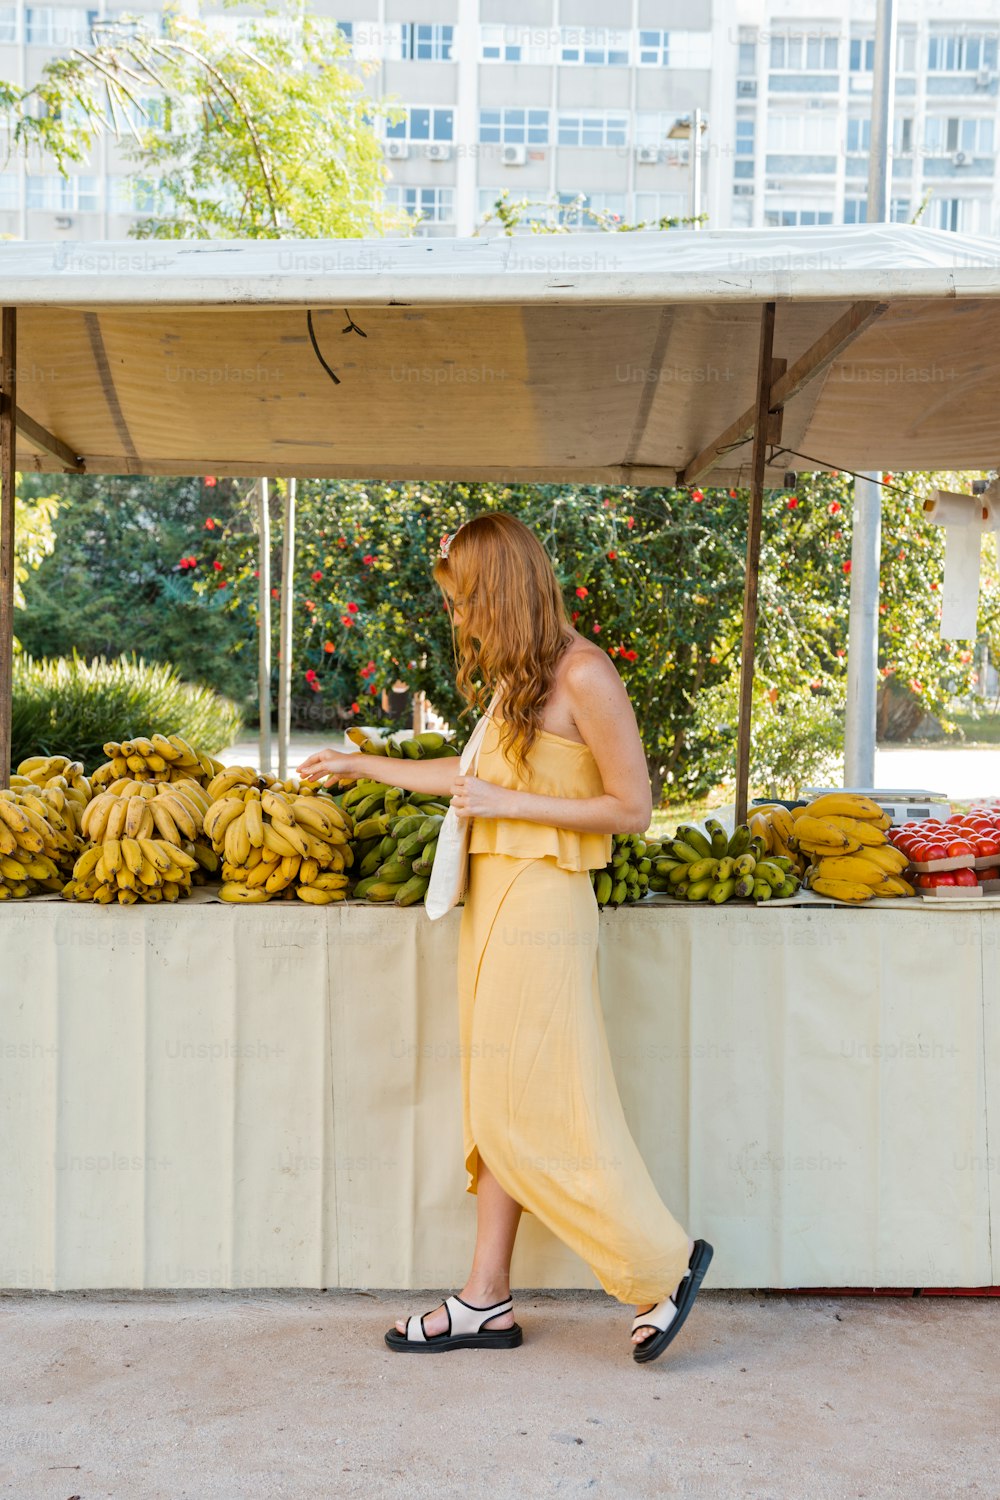 果物屋の前に立つ黄色いドレスを着た女性